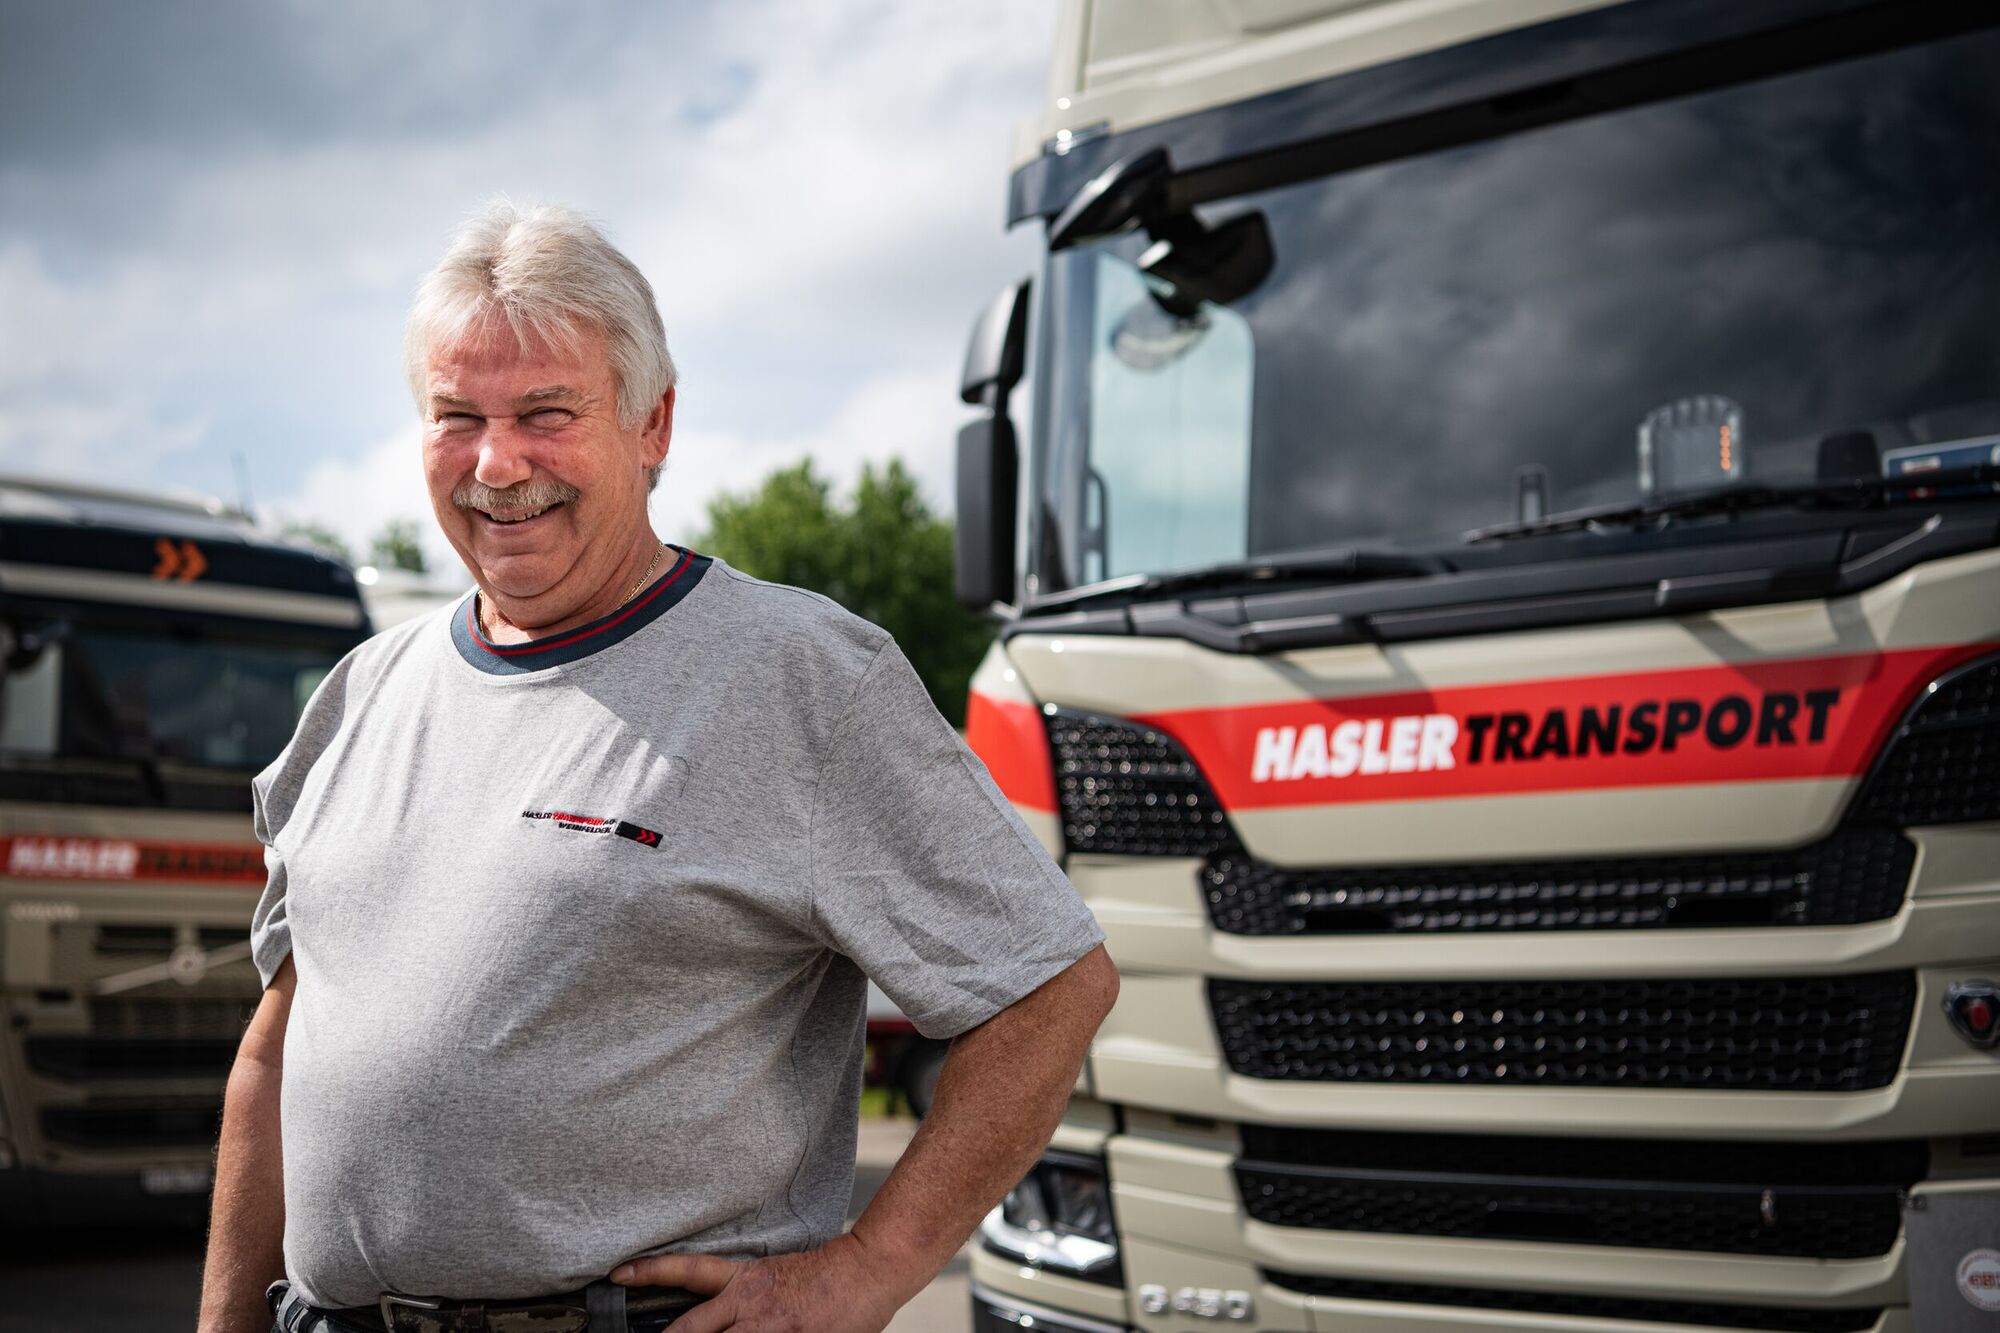 HASLER TRANSPORT AG - Otti Wechsler, Chauffeur